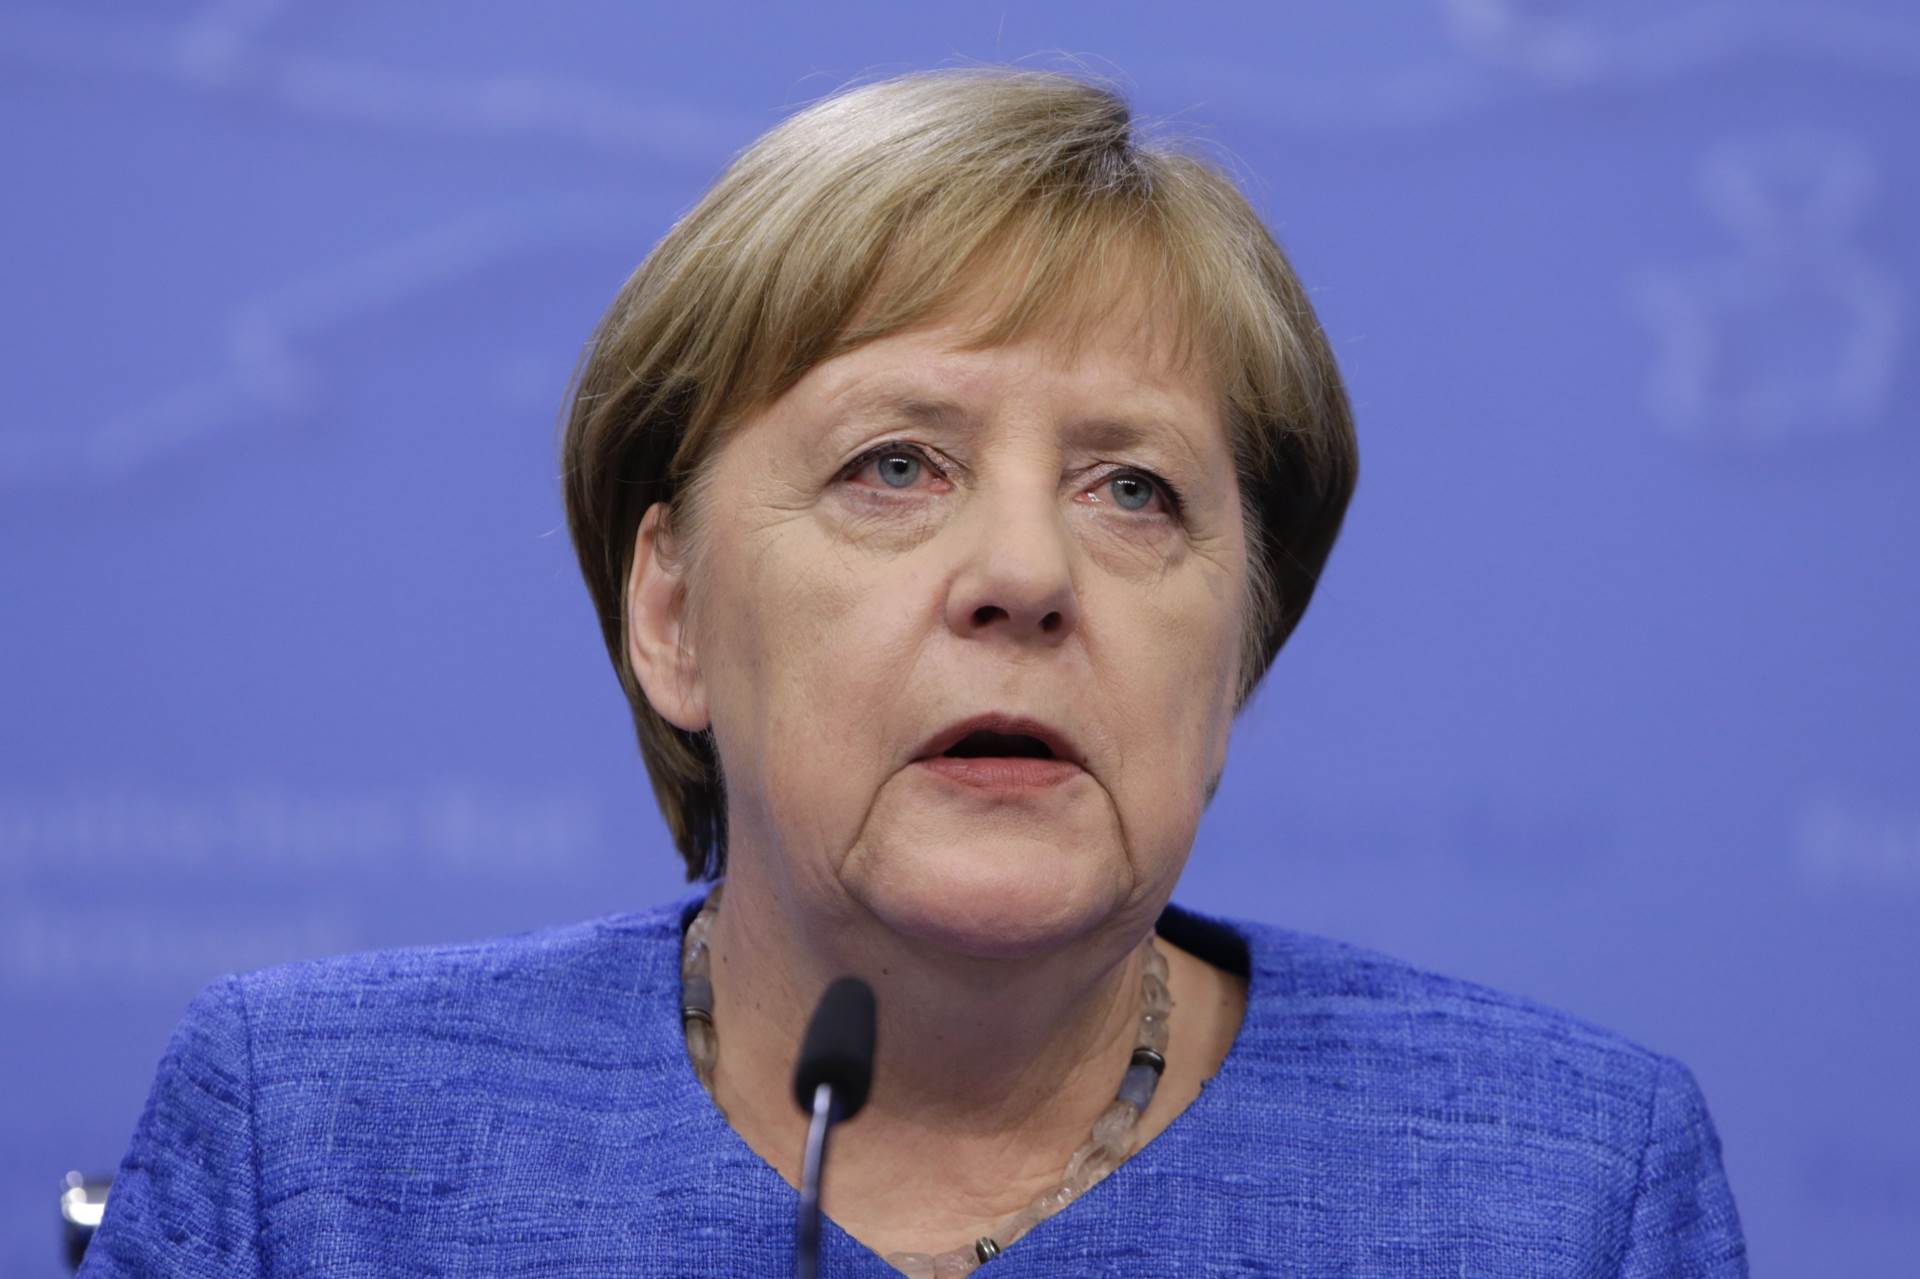 NJEMAČKA KANCELARKA: Angela Merkel već 15 godina na čelu Njemačke